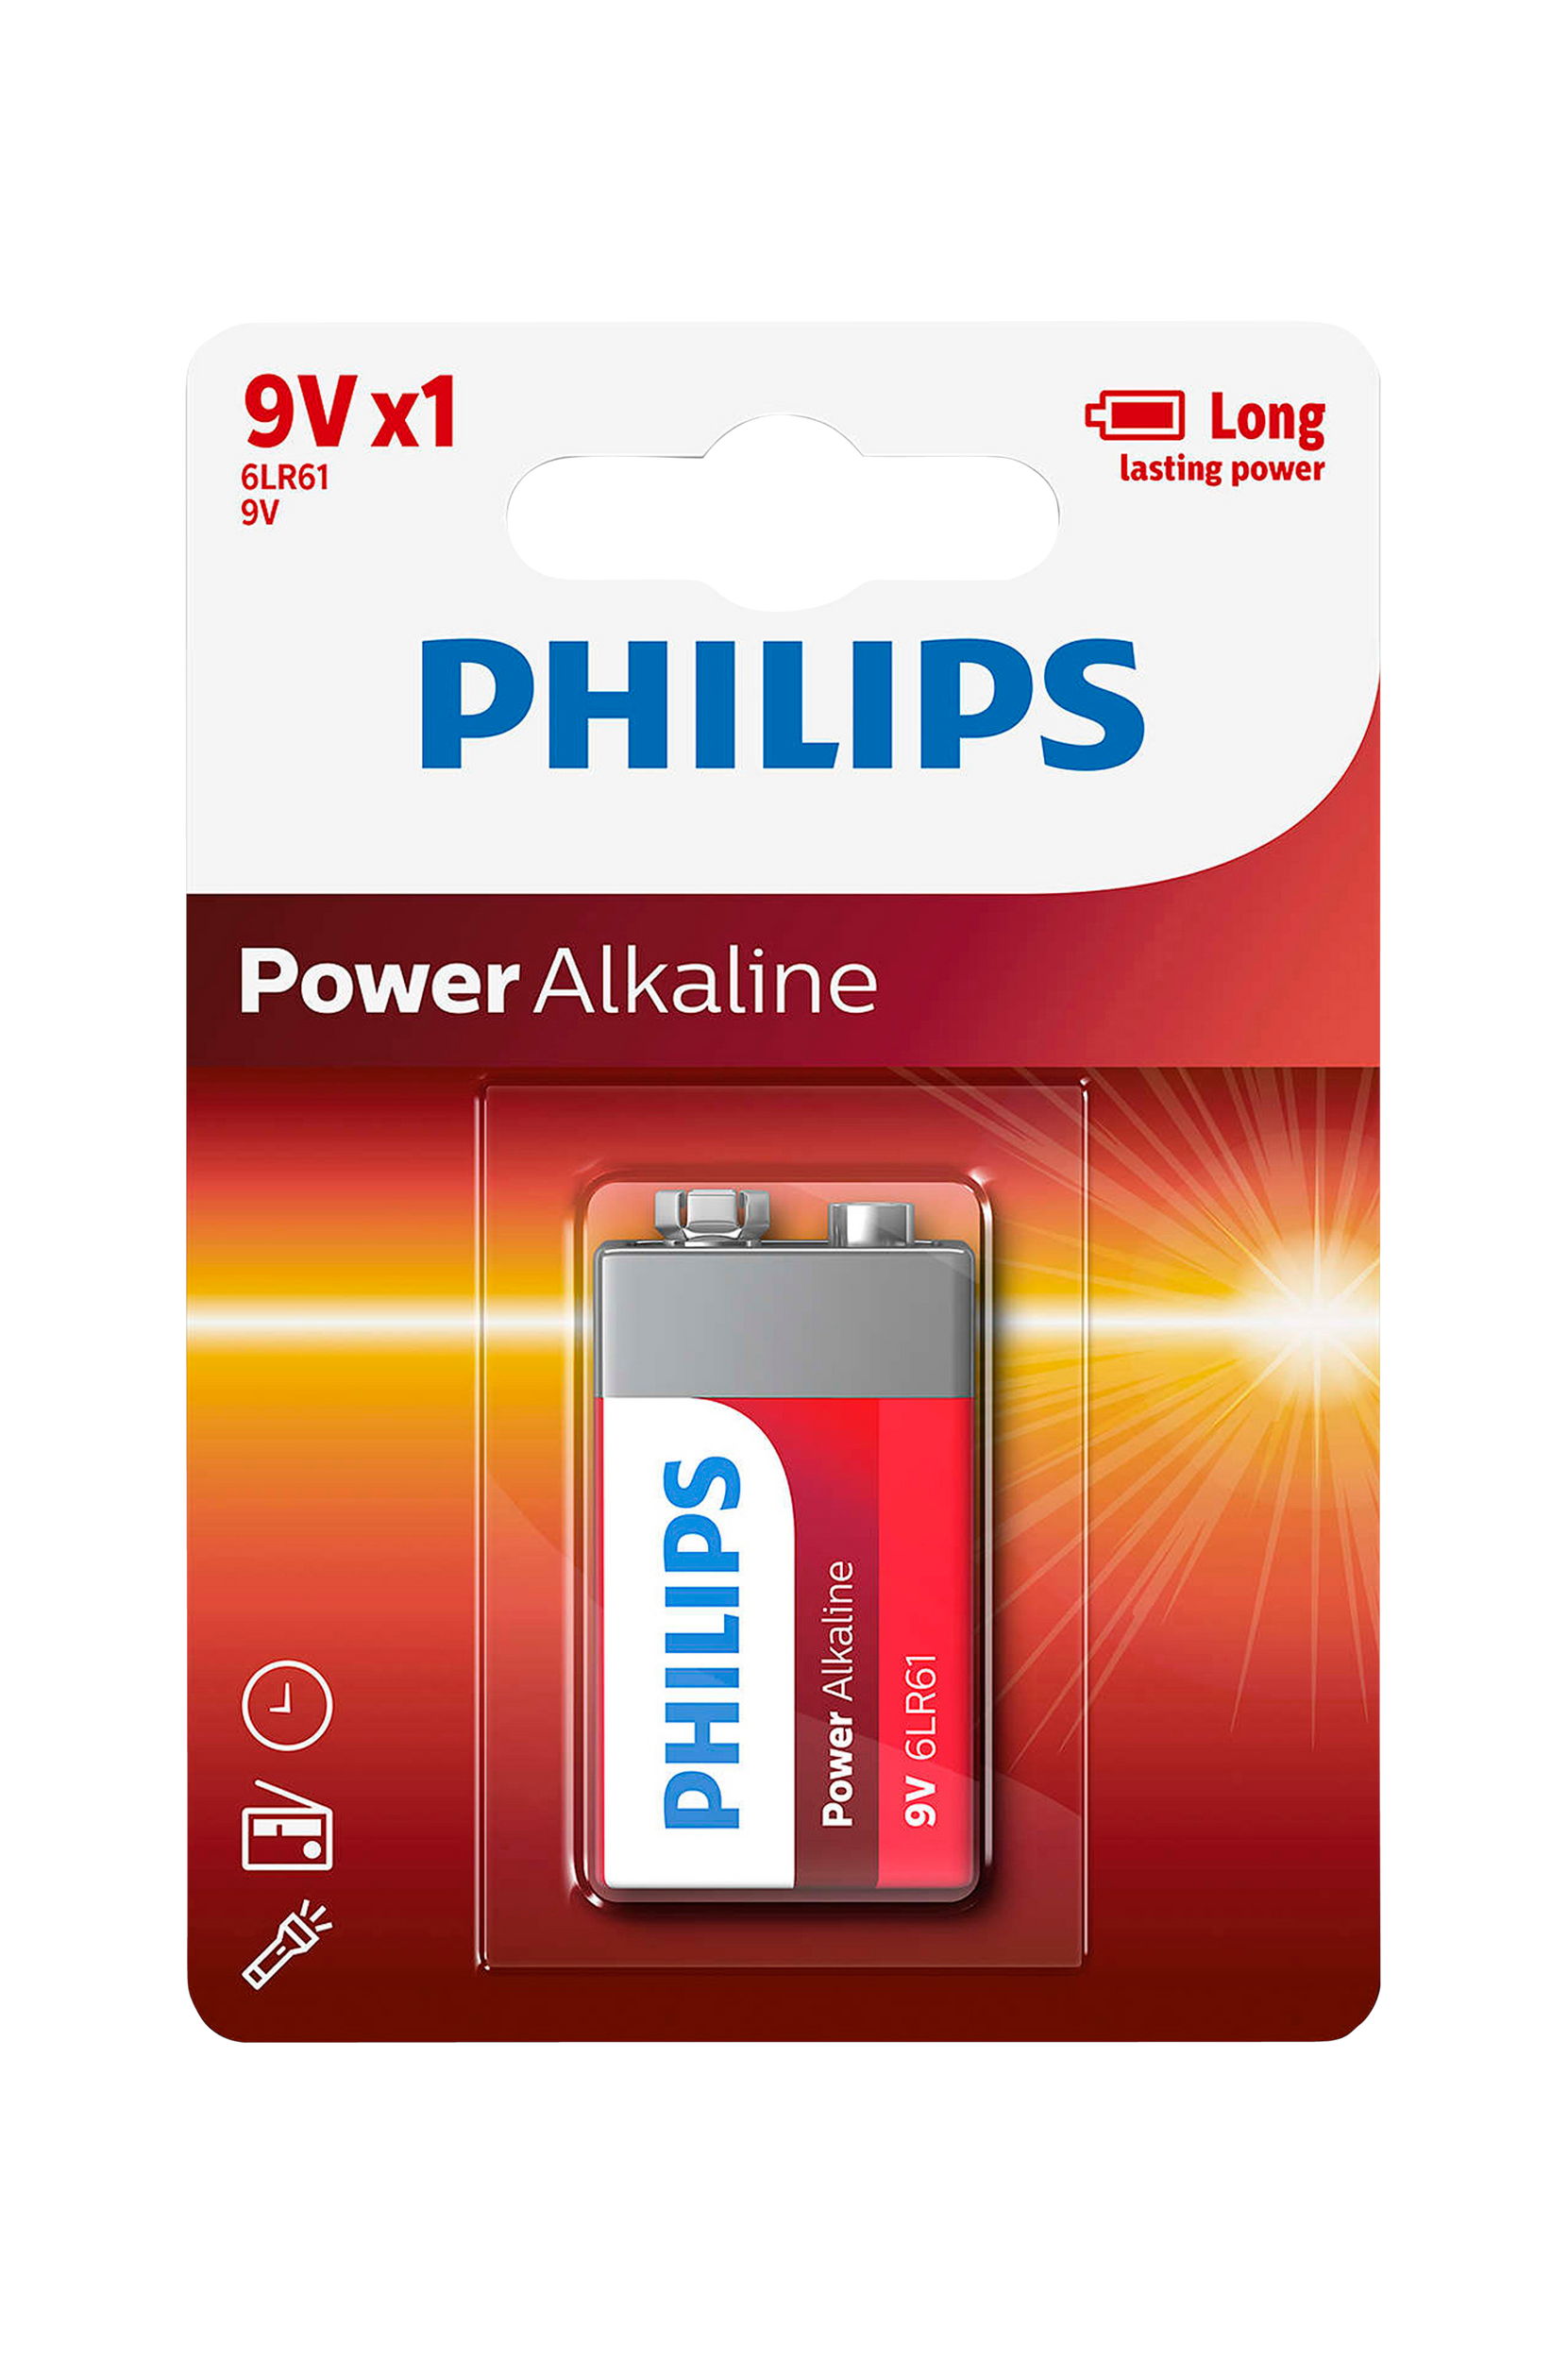 Power Alkaline 9V, Philips